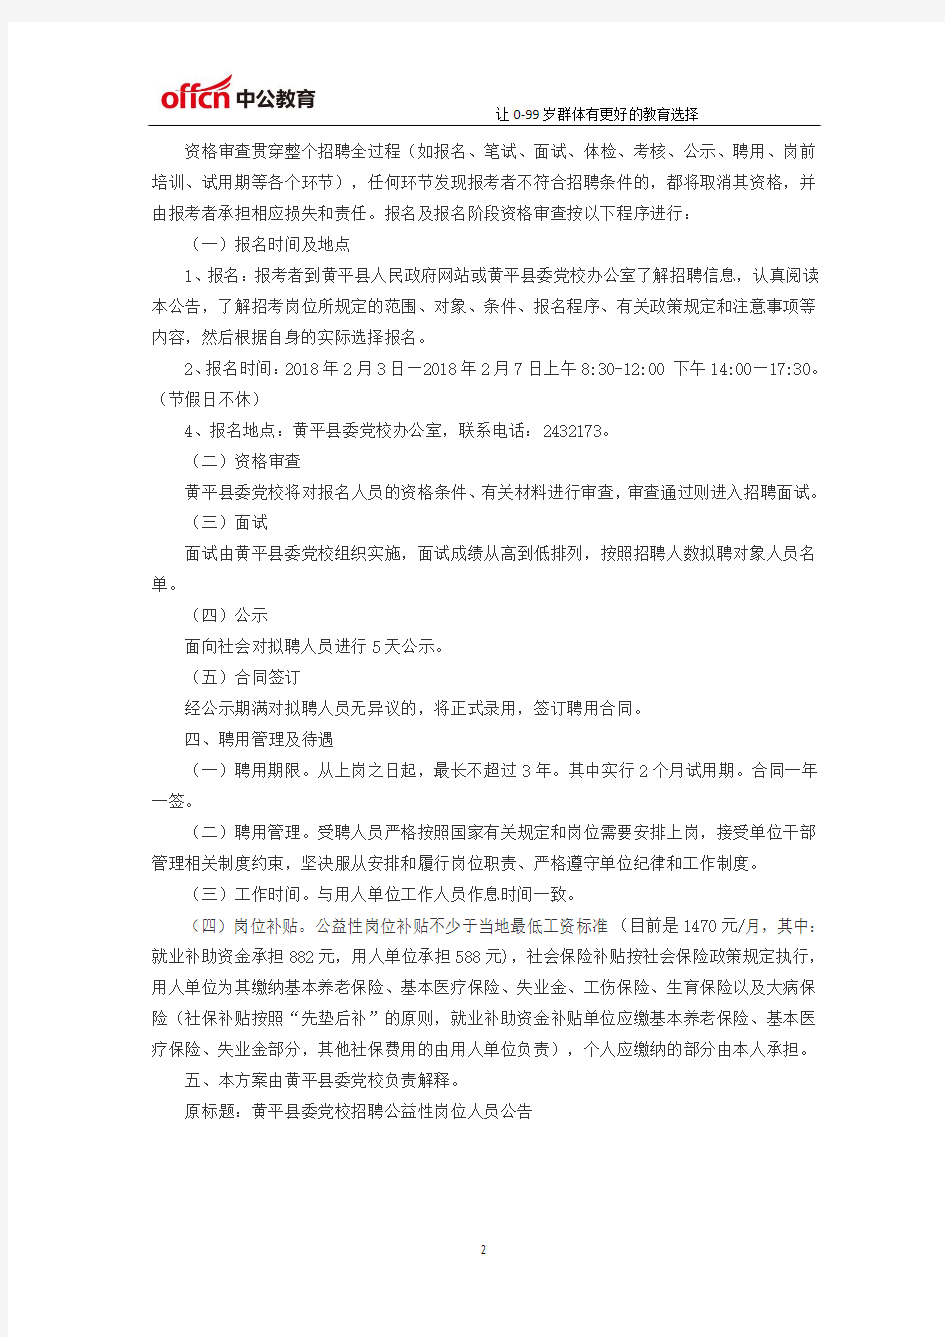 贵州黄平县委党校招聘公益性岗位人员公告(2月3日-7日报名)